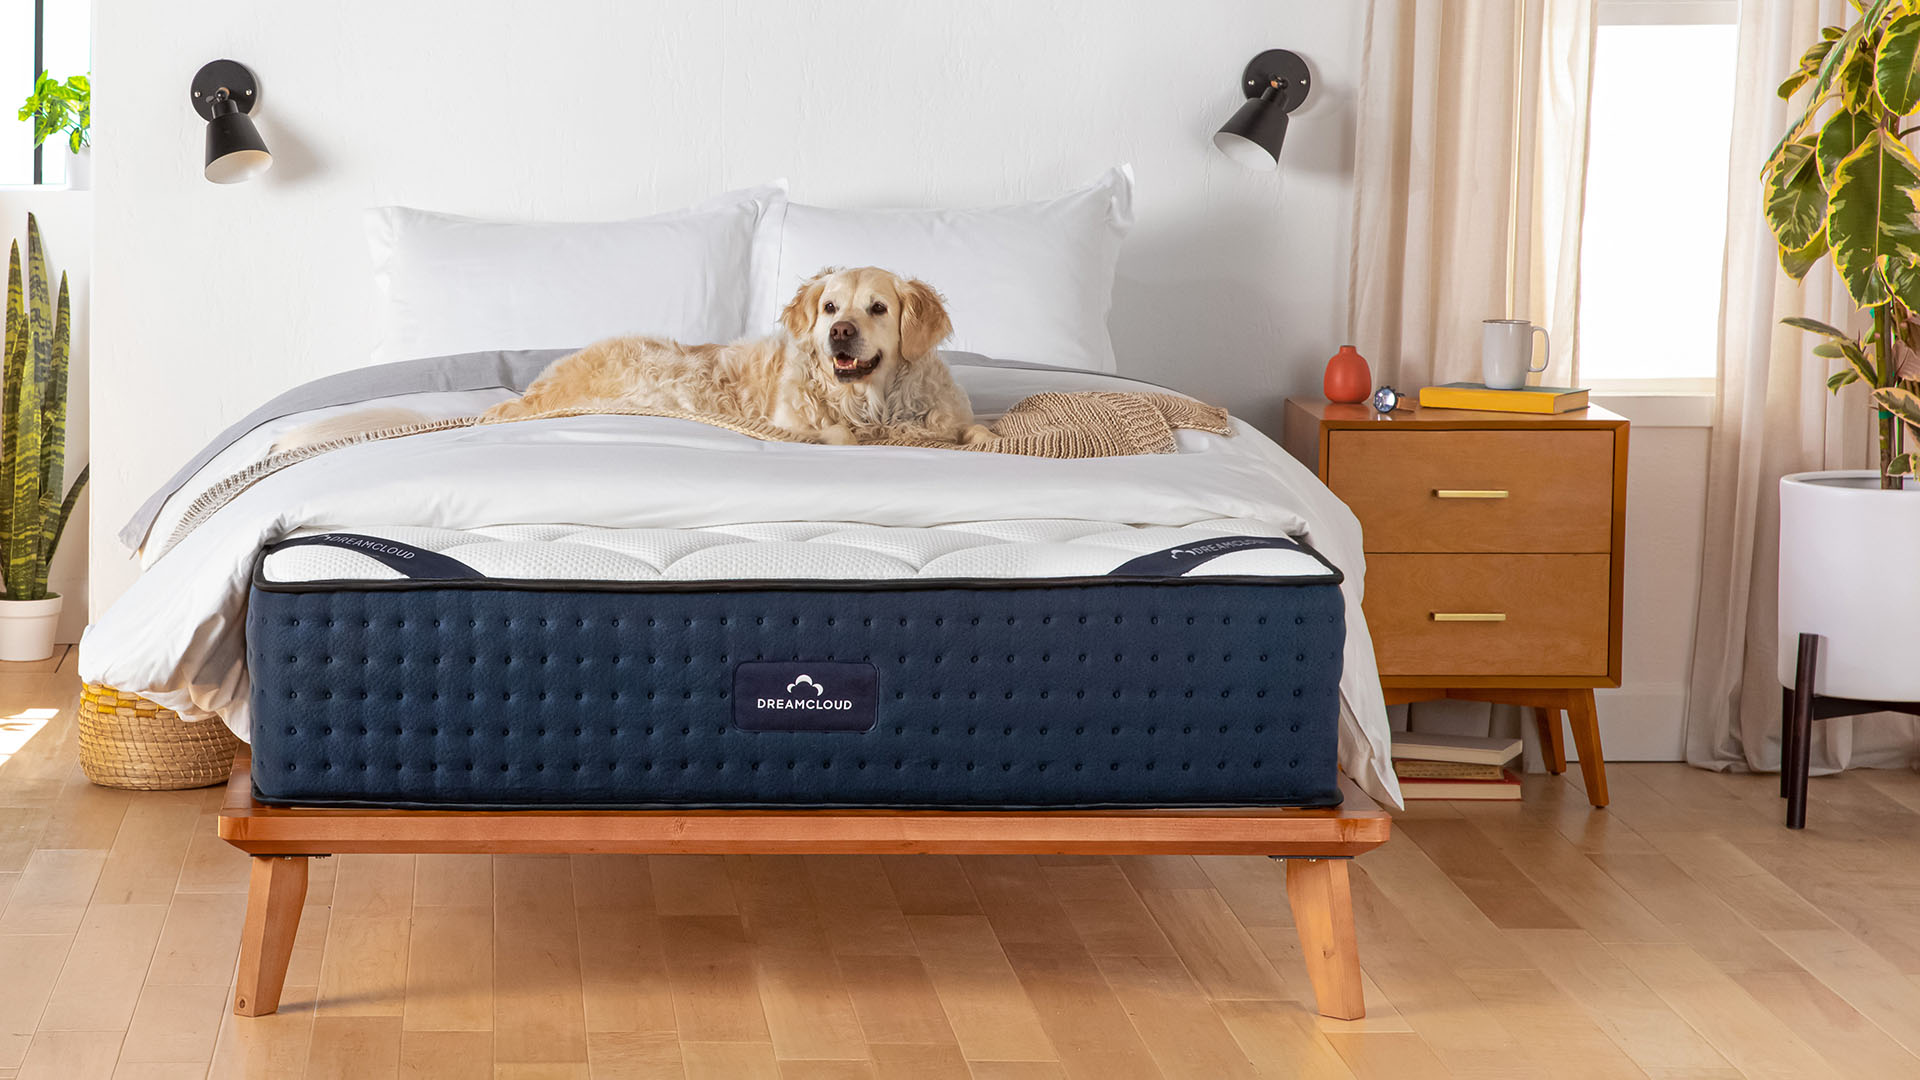 DreamCloud Luxury Hybrid mattress in a bedroom